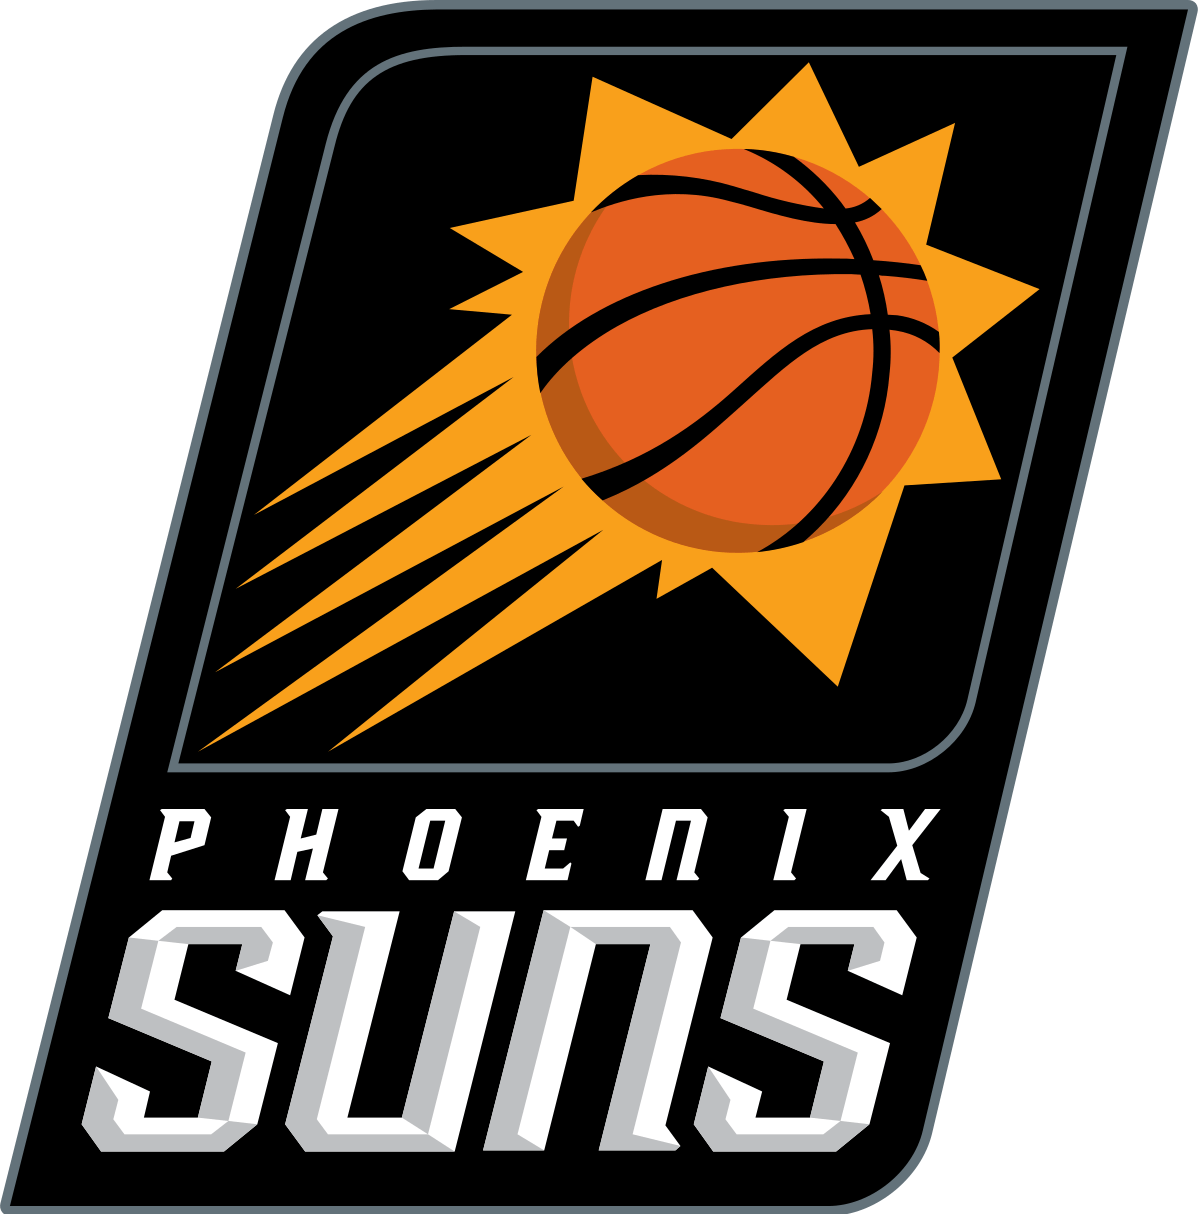 Phoenix Suns 2021 Roster: à quoi ressemble l'équipe avec Chris Paul, Jae Crowder et d'autres signatures et métiers